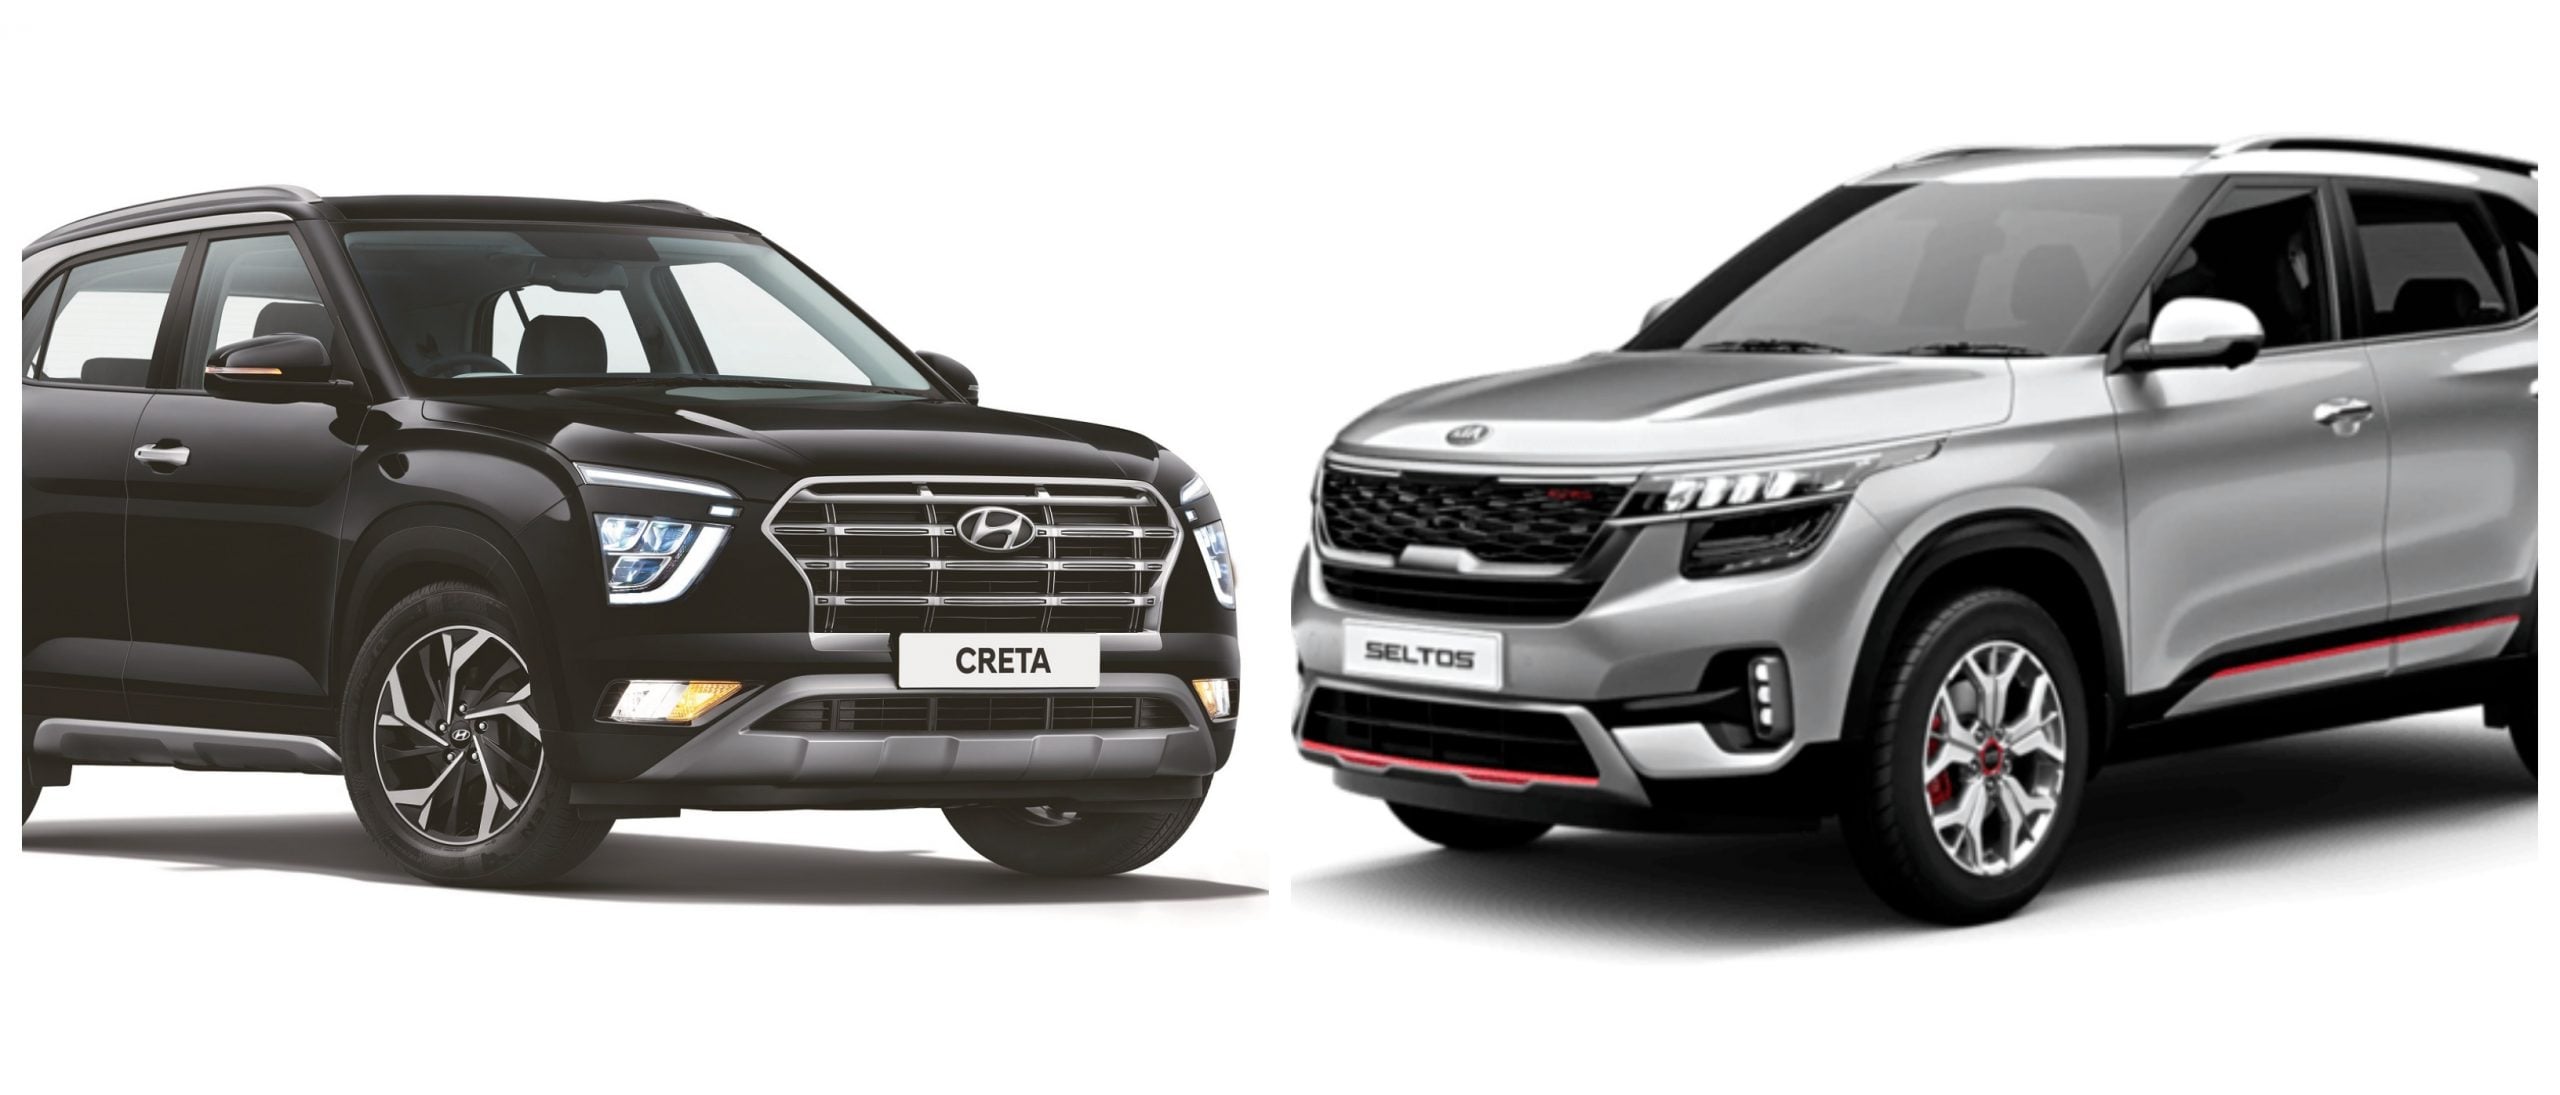 2020 Hyundai Creta Sx O Vs Kia Seltos Gtx Features Comparison